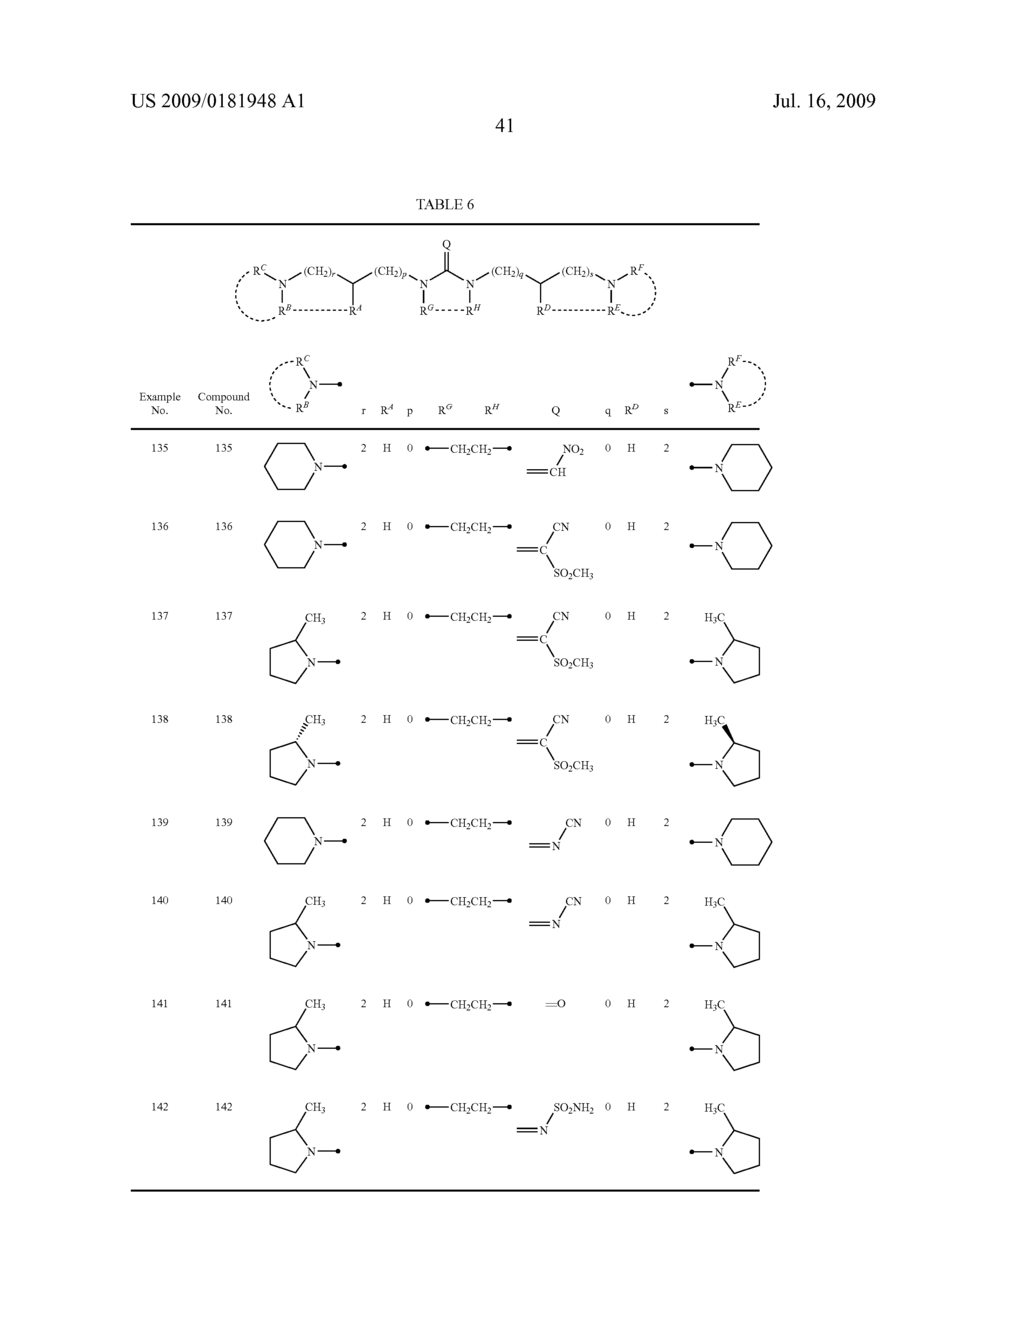 DIAMINE DERIVATIVE - diagram, schematic, and image 42